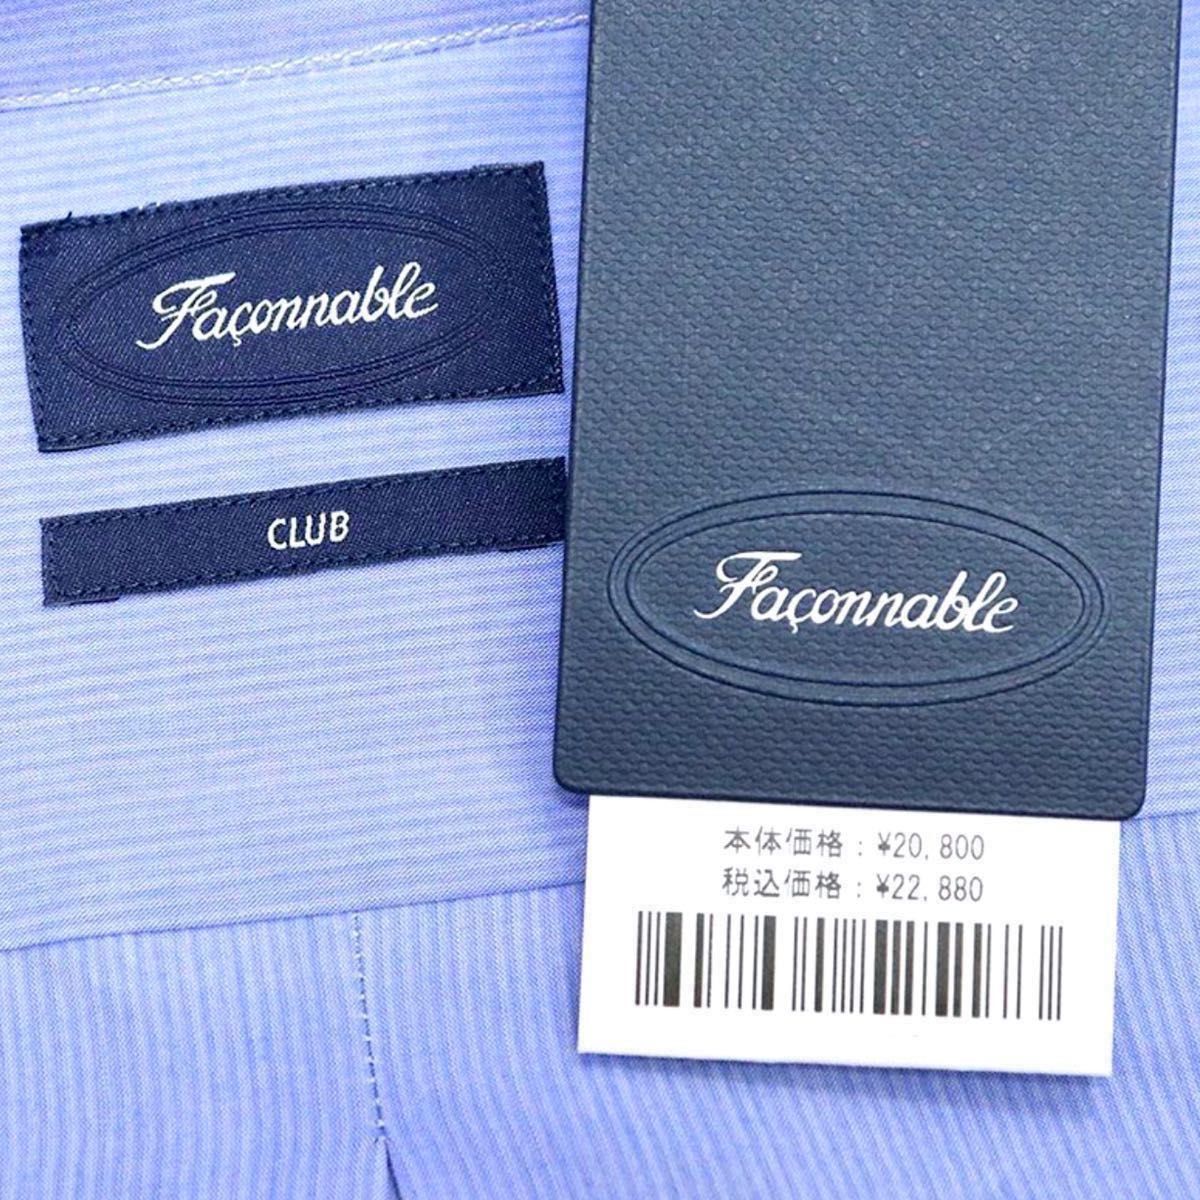 【新品タグ付】フランス発ブランド Faconnable シャツ コットン ホリゾンタルカラー ストライプ ブルー XLサイズ